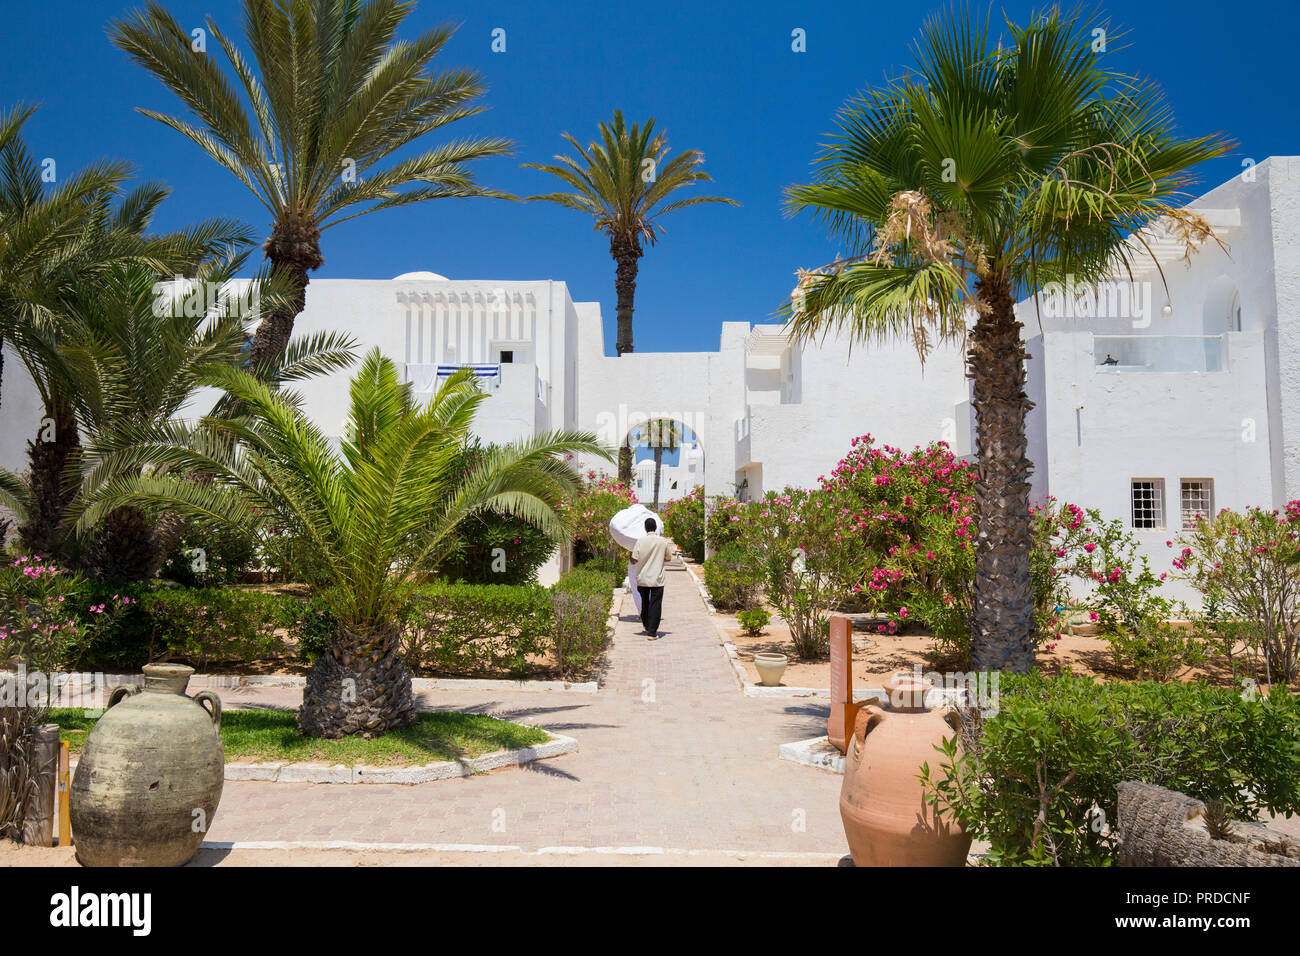 Djerba, Tunisie - 20 juin 2018 : Hôtel Seabel Aladin Djerba est situé dans une zone touristique, face à la plage sur l'île de Djerba, Tunisie. Banque D'Images